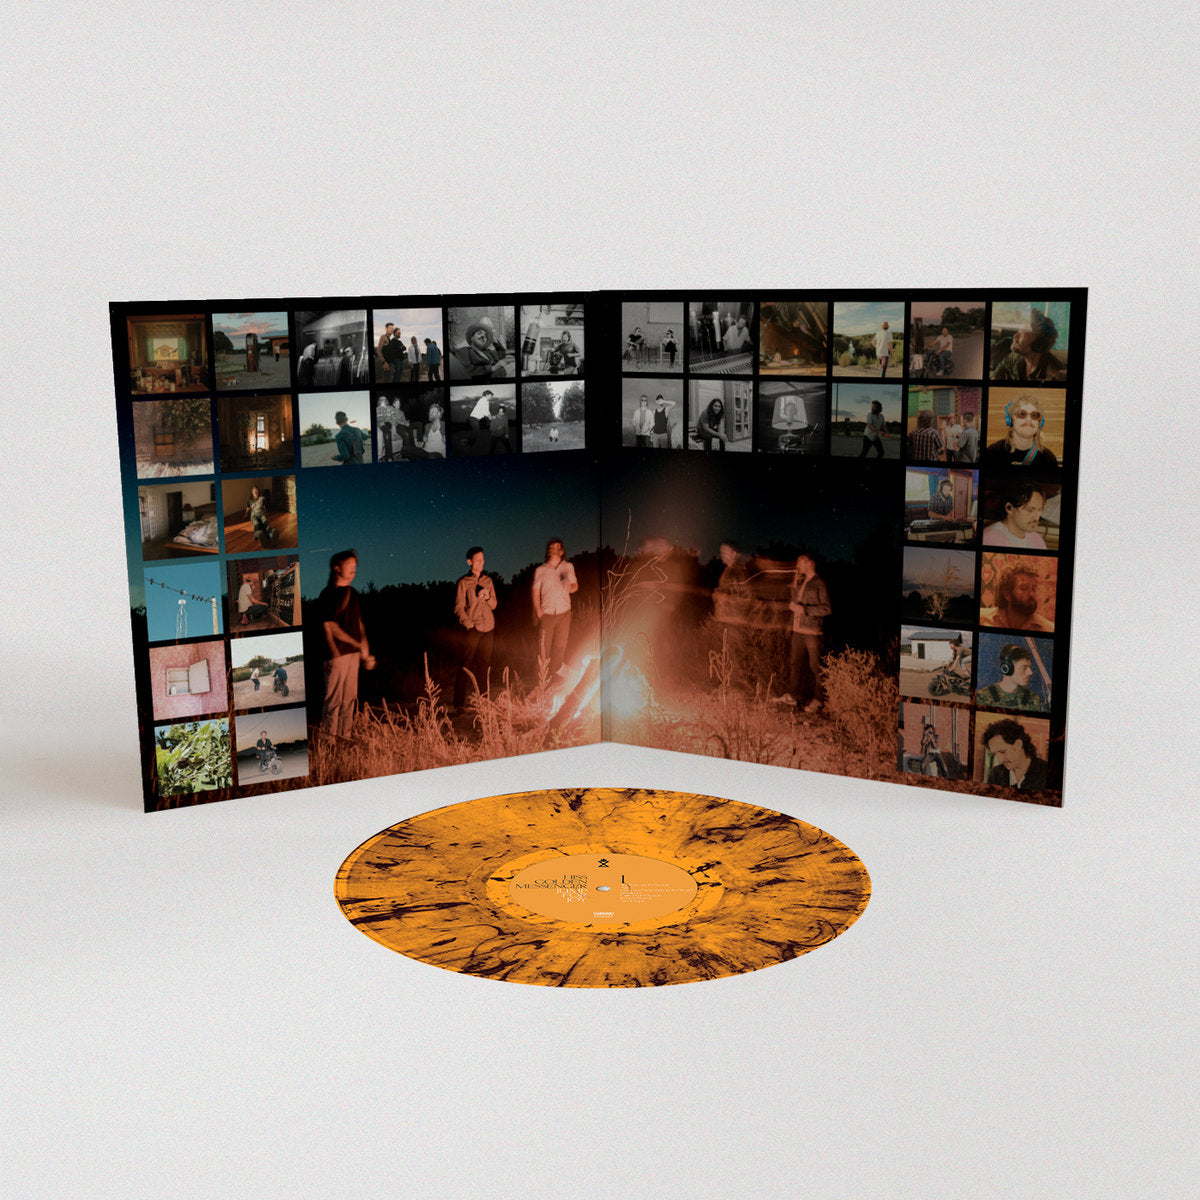 Hiss Golden Messenger: Jump For Joy Vinyl LP (Orange & Black Swirl)